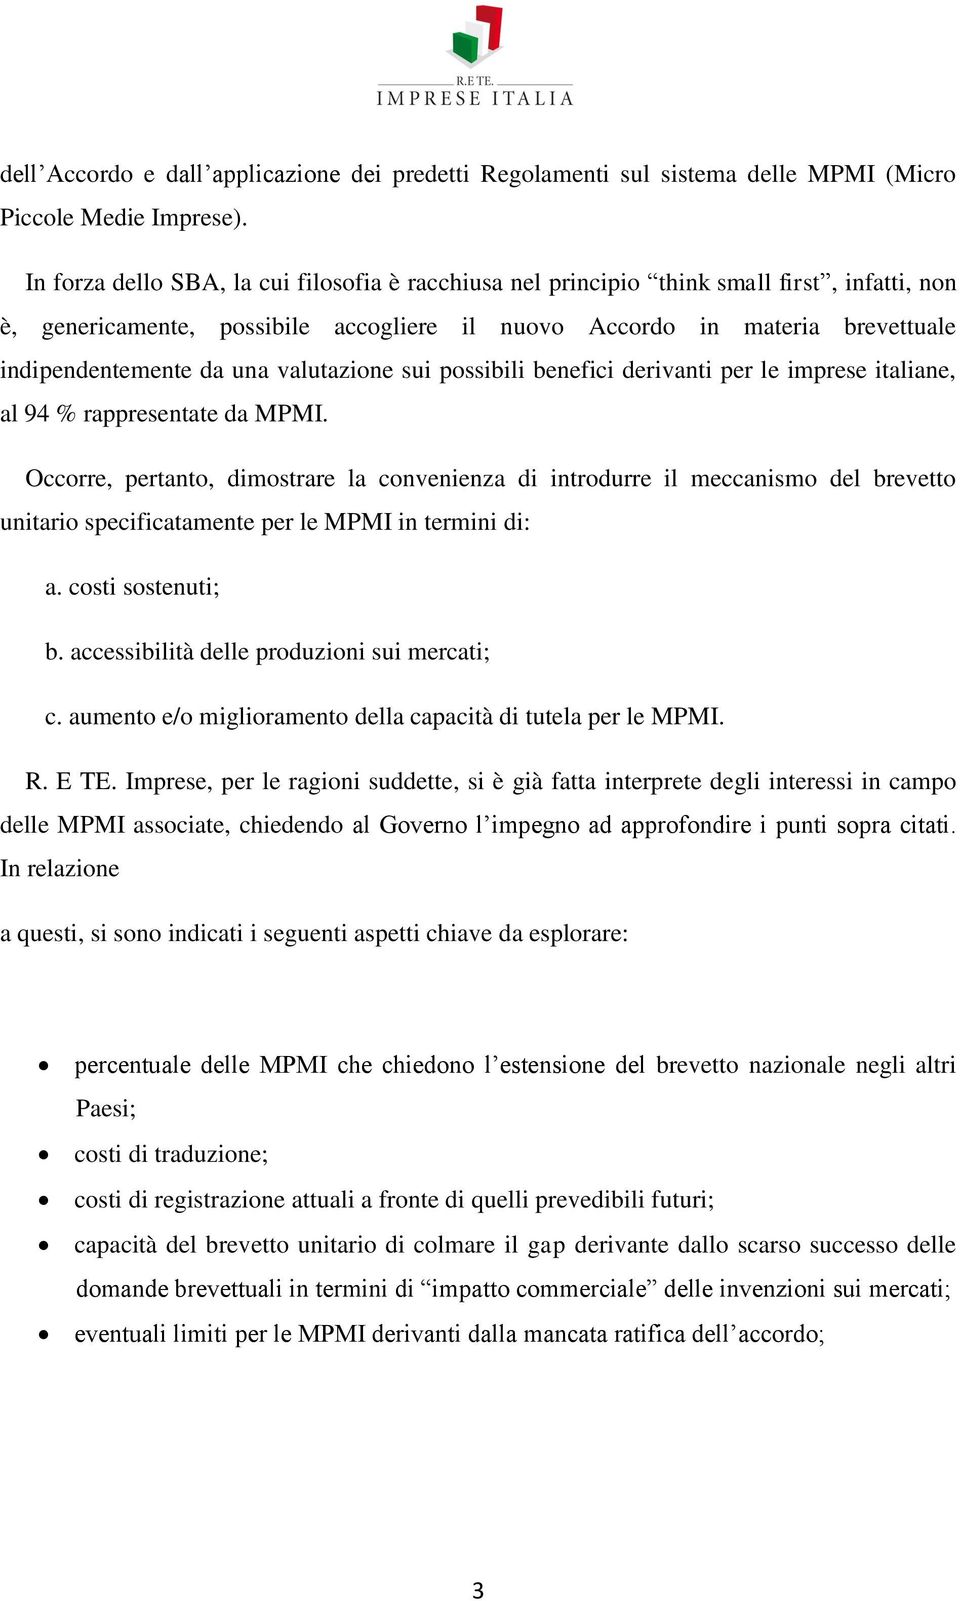 valutazione sui possibili benefici derivanti per le imprese italiane, al 94 % rappresentate da MPMI.